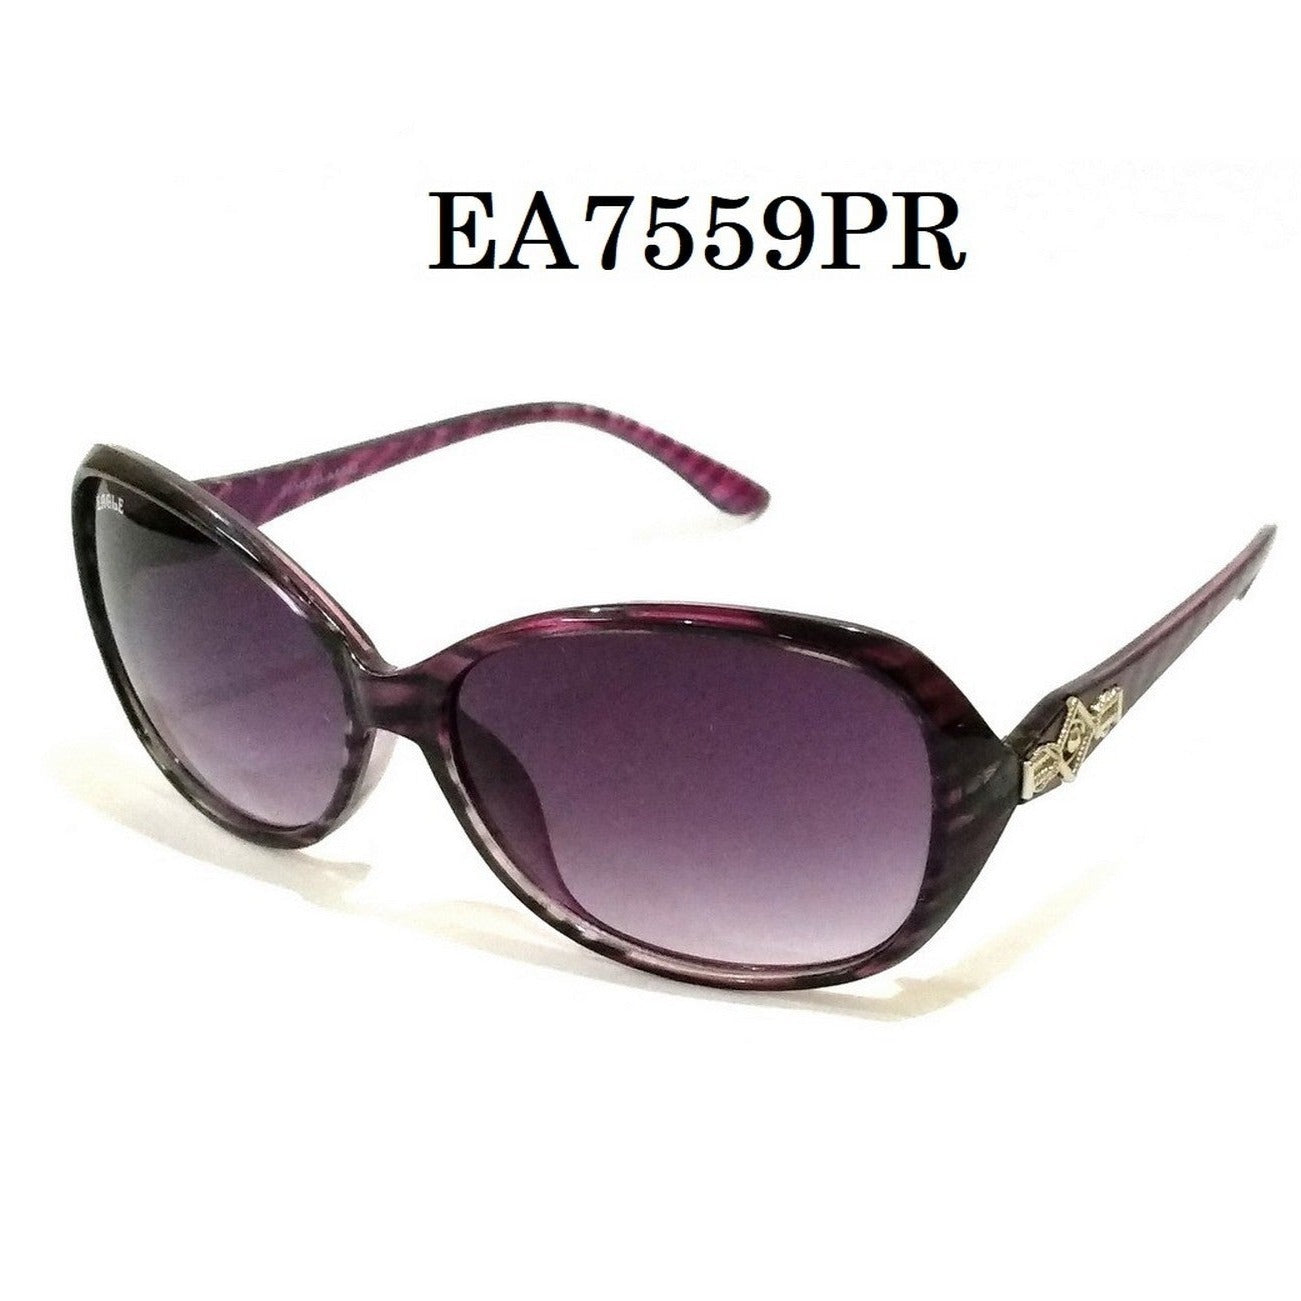 Purple Sunglasses for Women EA7559PR